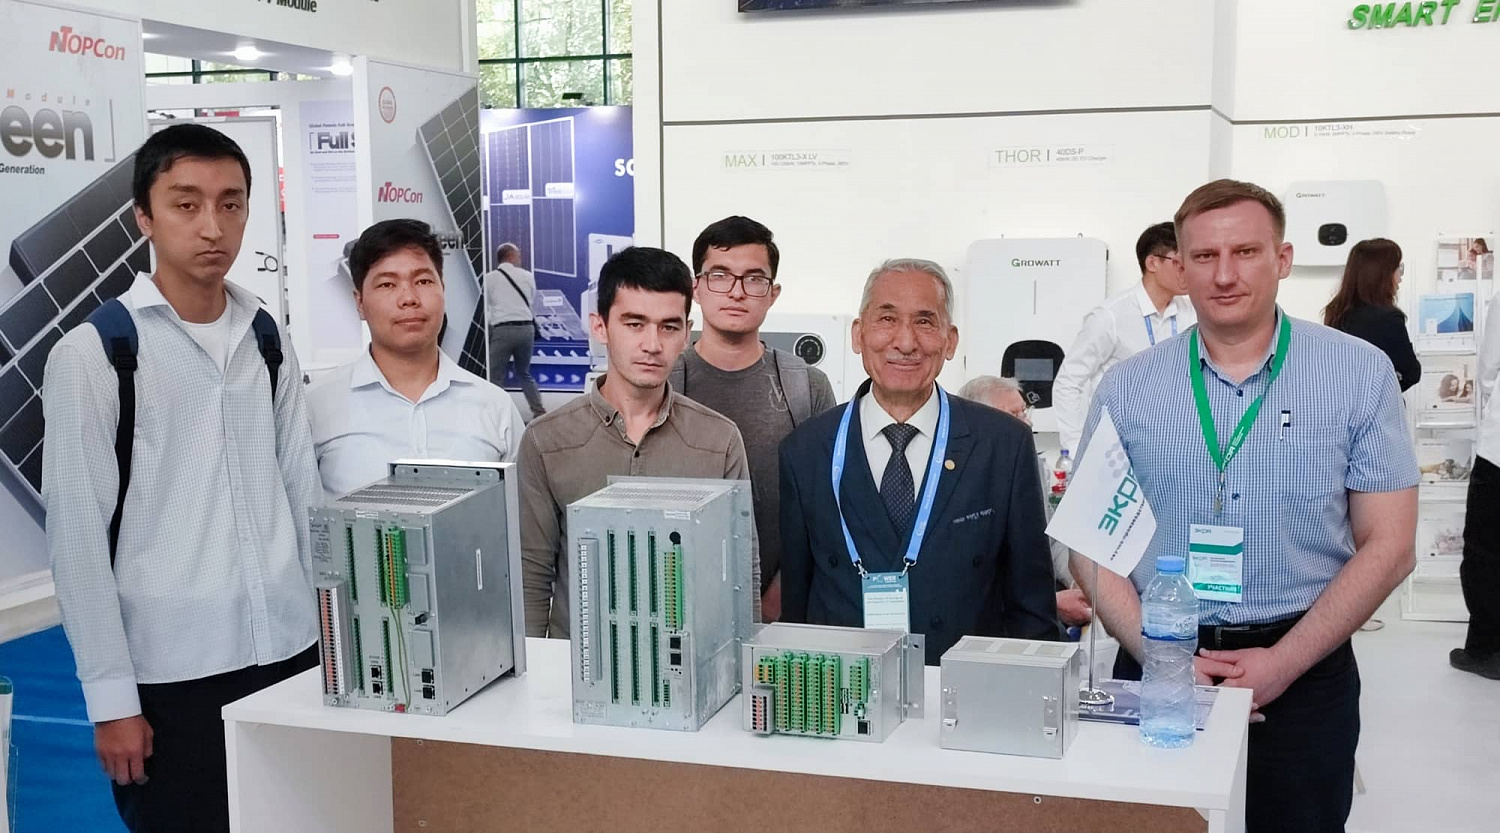 НПП «ЭКРА» – участник международной выставки «Power Uzbekistan 2023»